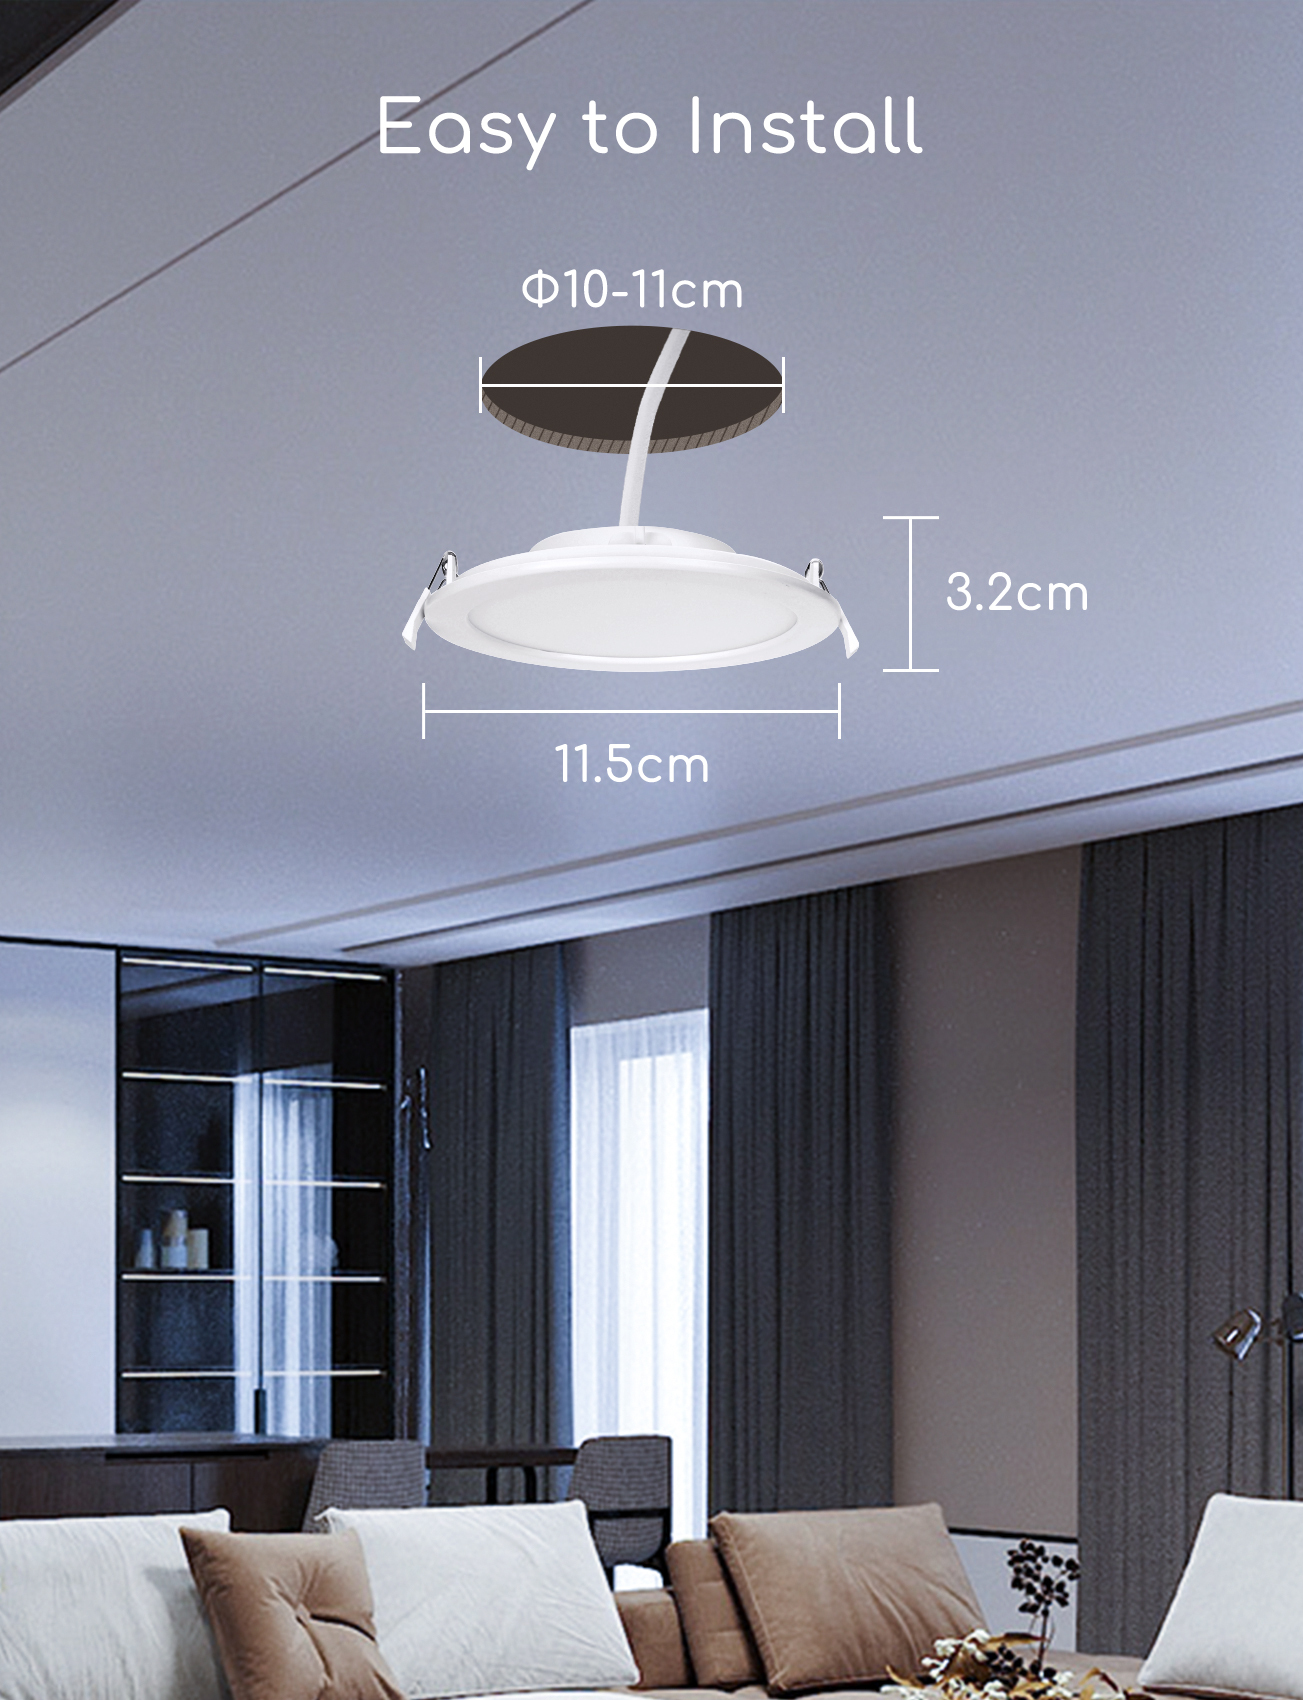 Aigostar Downlight LED Empotrable Inteligente Wifi, 6W, CCT. Regulable de luz cálida a blanca 3000-6500K, 360lm. Compatible Alexa y Google Home. Foco Empotrable LED: 11,5 x 3,2 cm alto